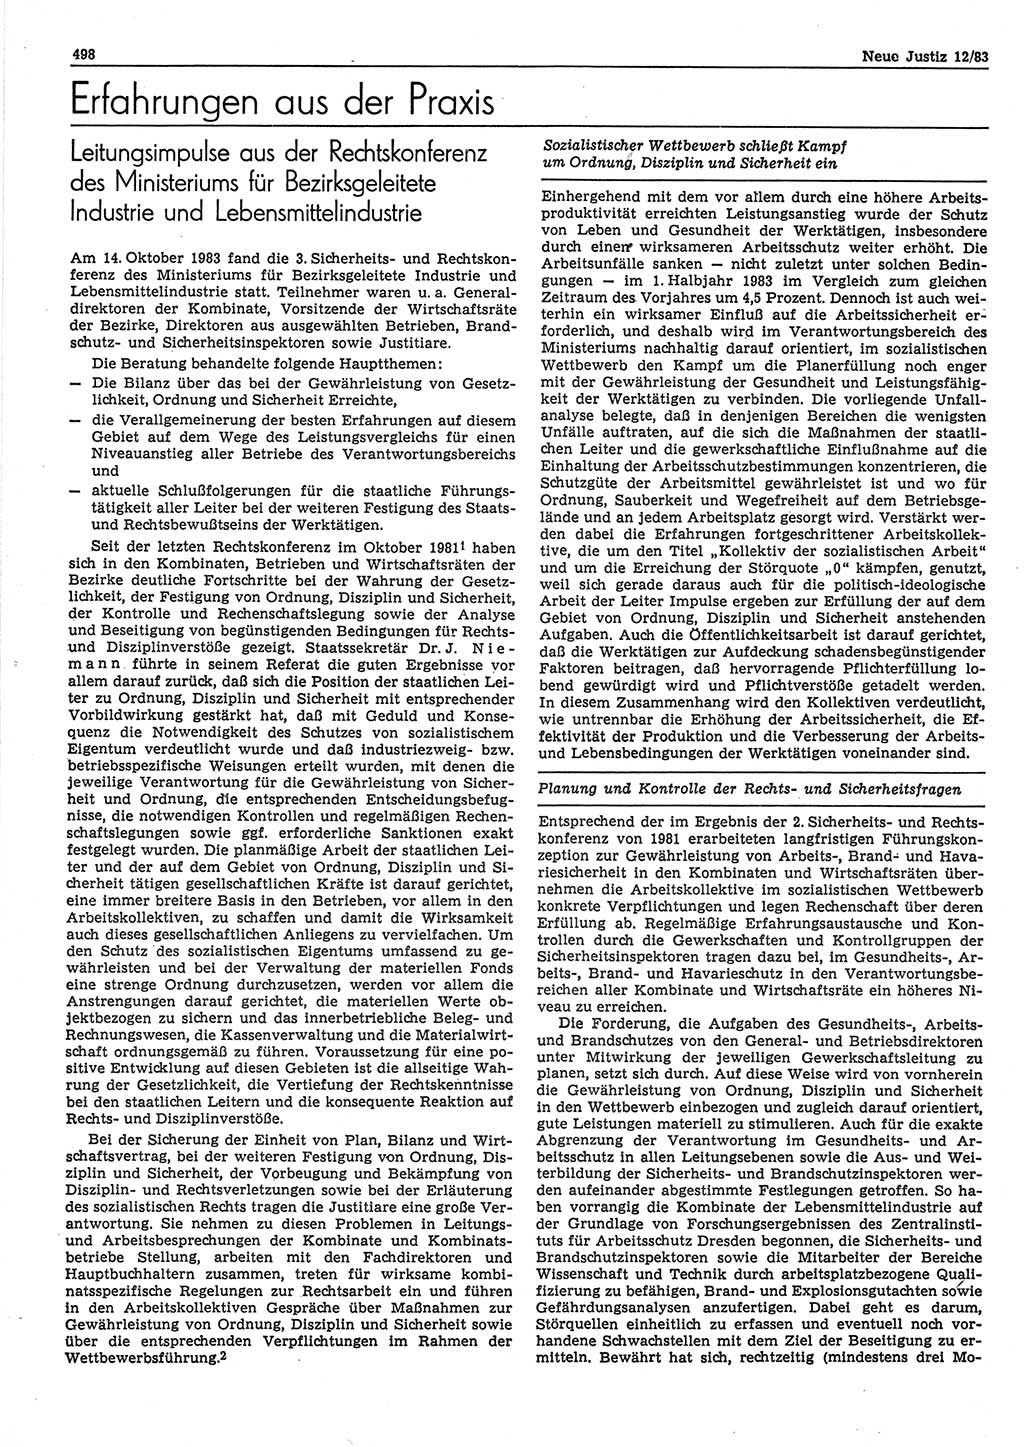 Neue Justiz (NJ), Zeitschrift für sozialistisches Recht und Gesetzlichkeit [Deutsche Demokratische Republik (DDR)], 37. Jahrgang 1983, Seite 498 (NJ DDR 1983, S. 498)